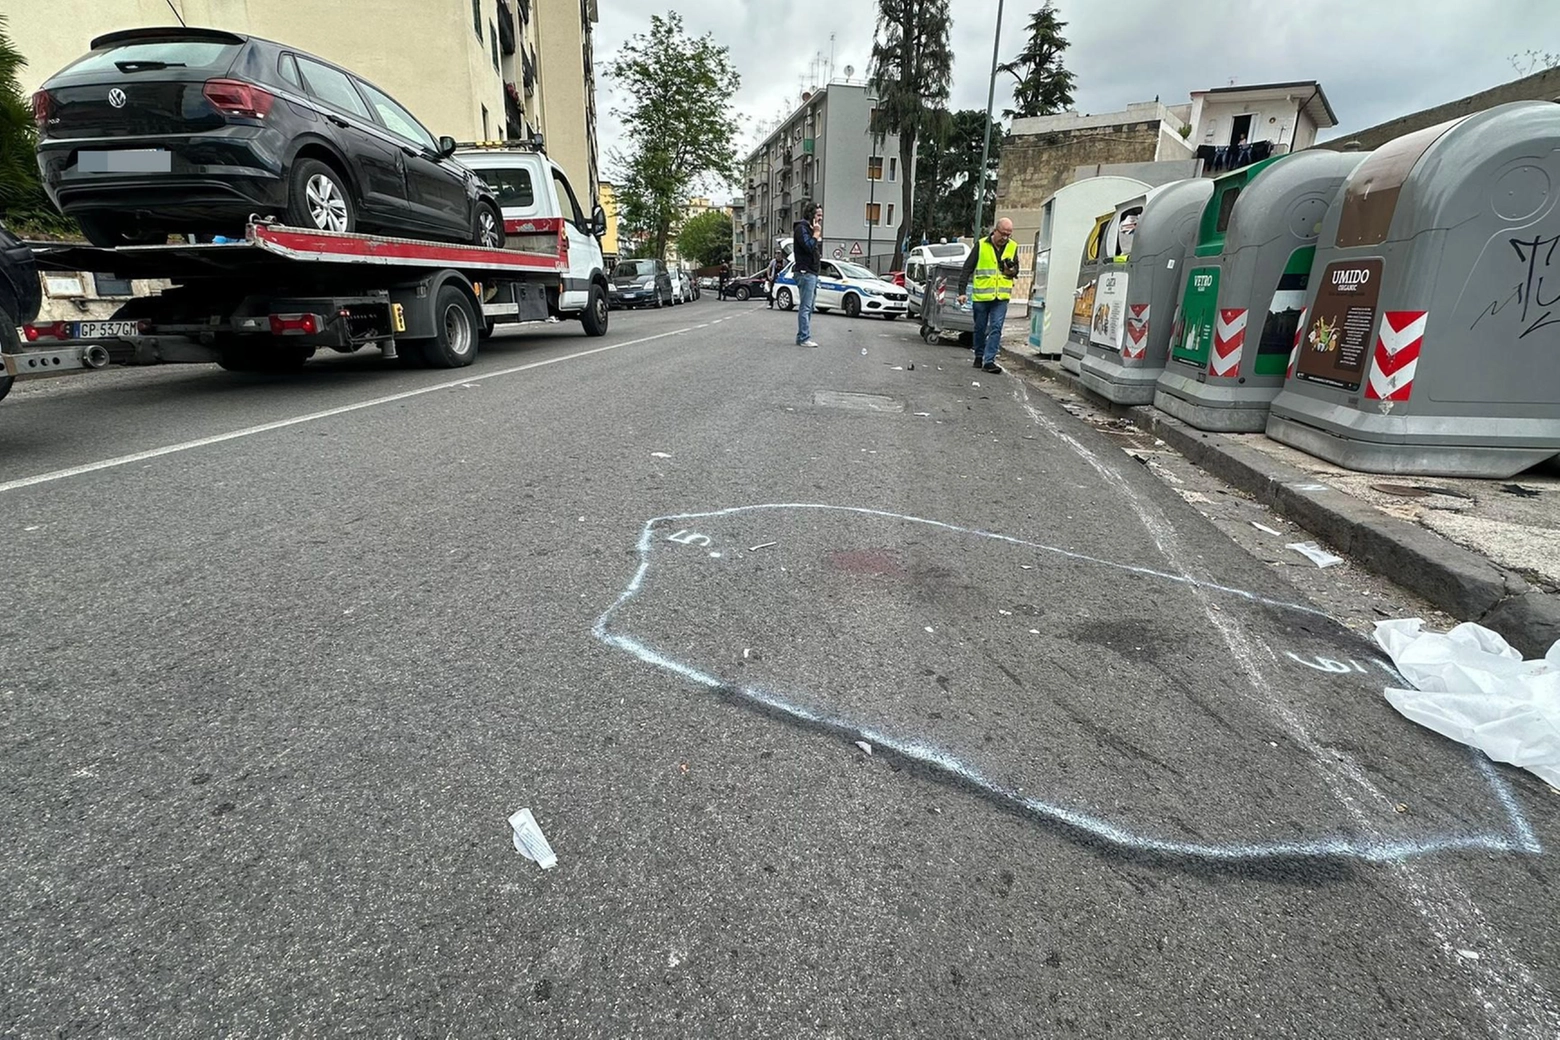 ++ Ragazza 21enne investita e uccisa da auto pirata a Napoli ++